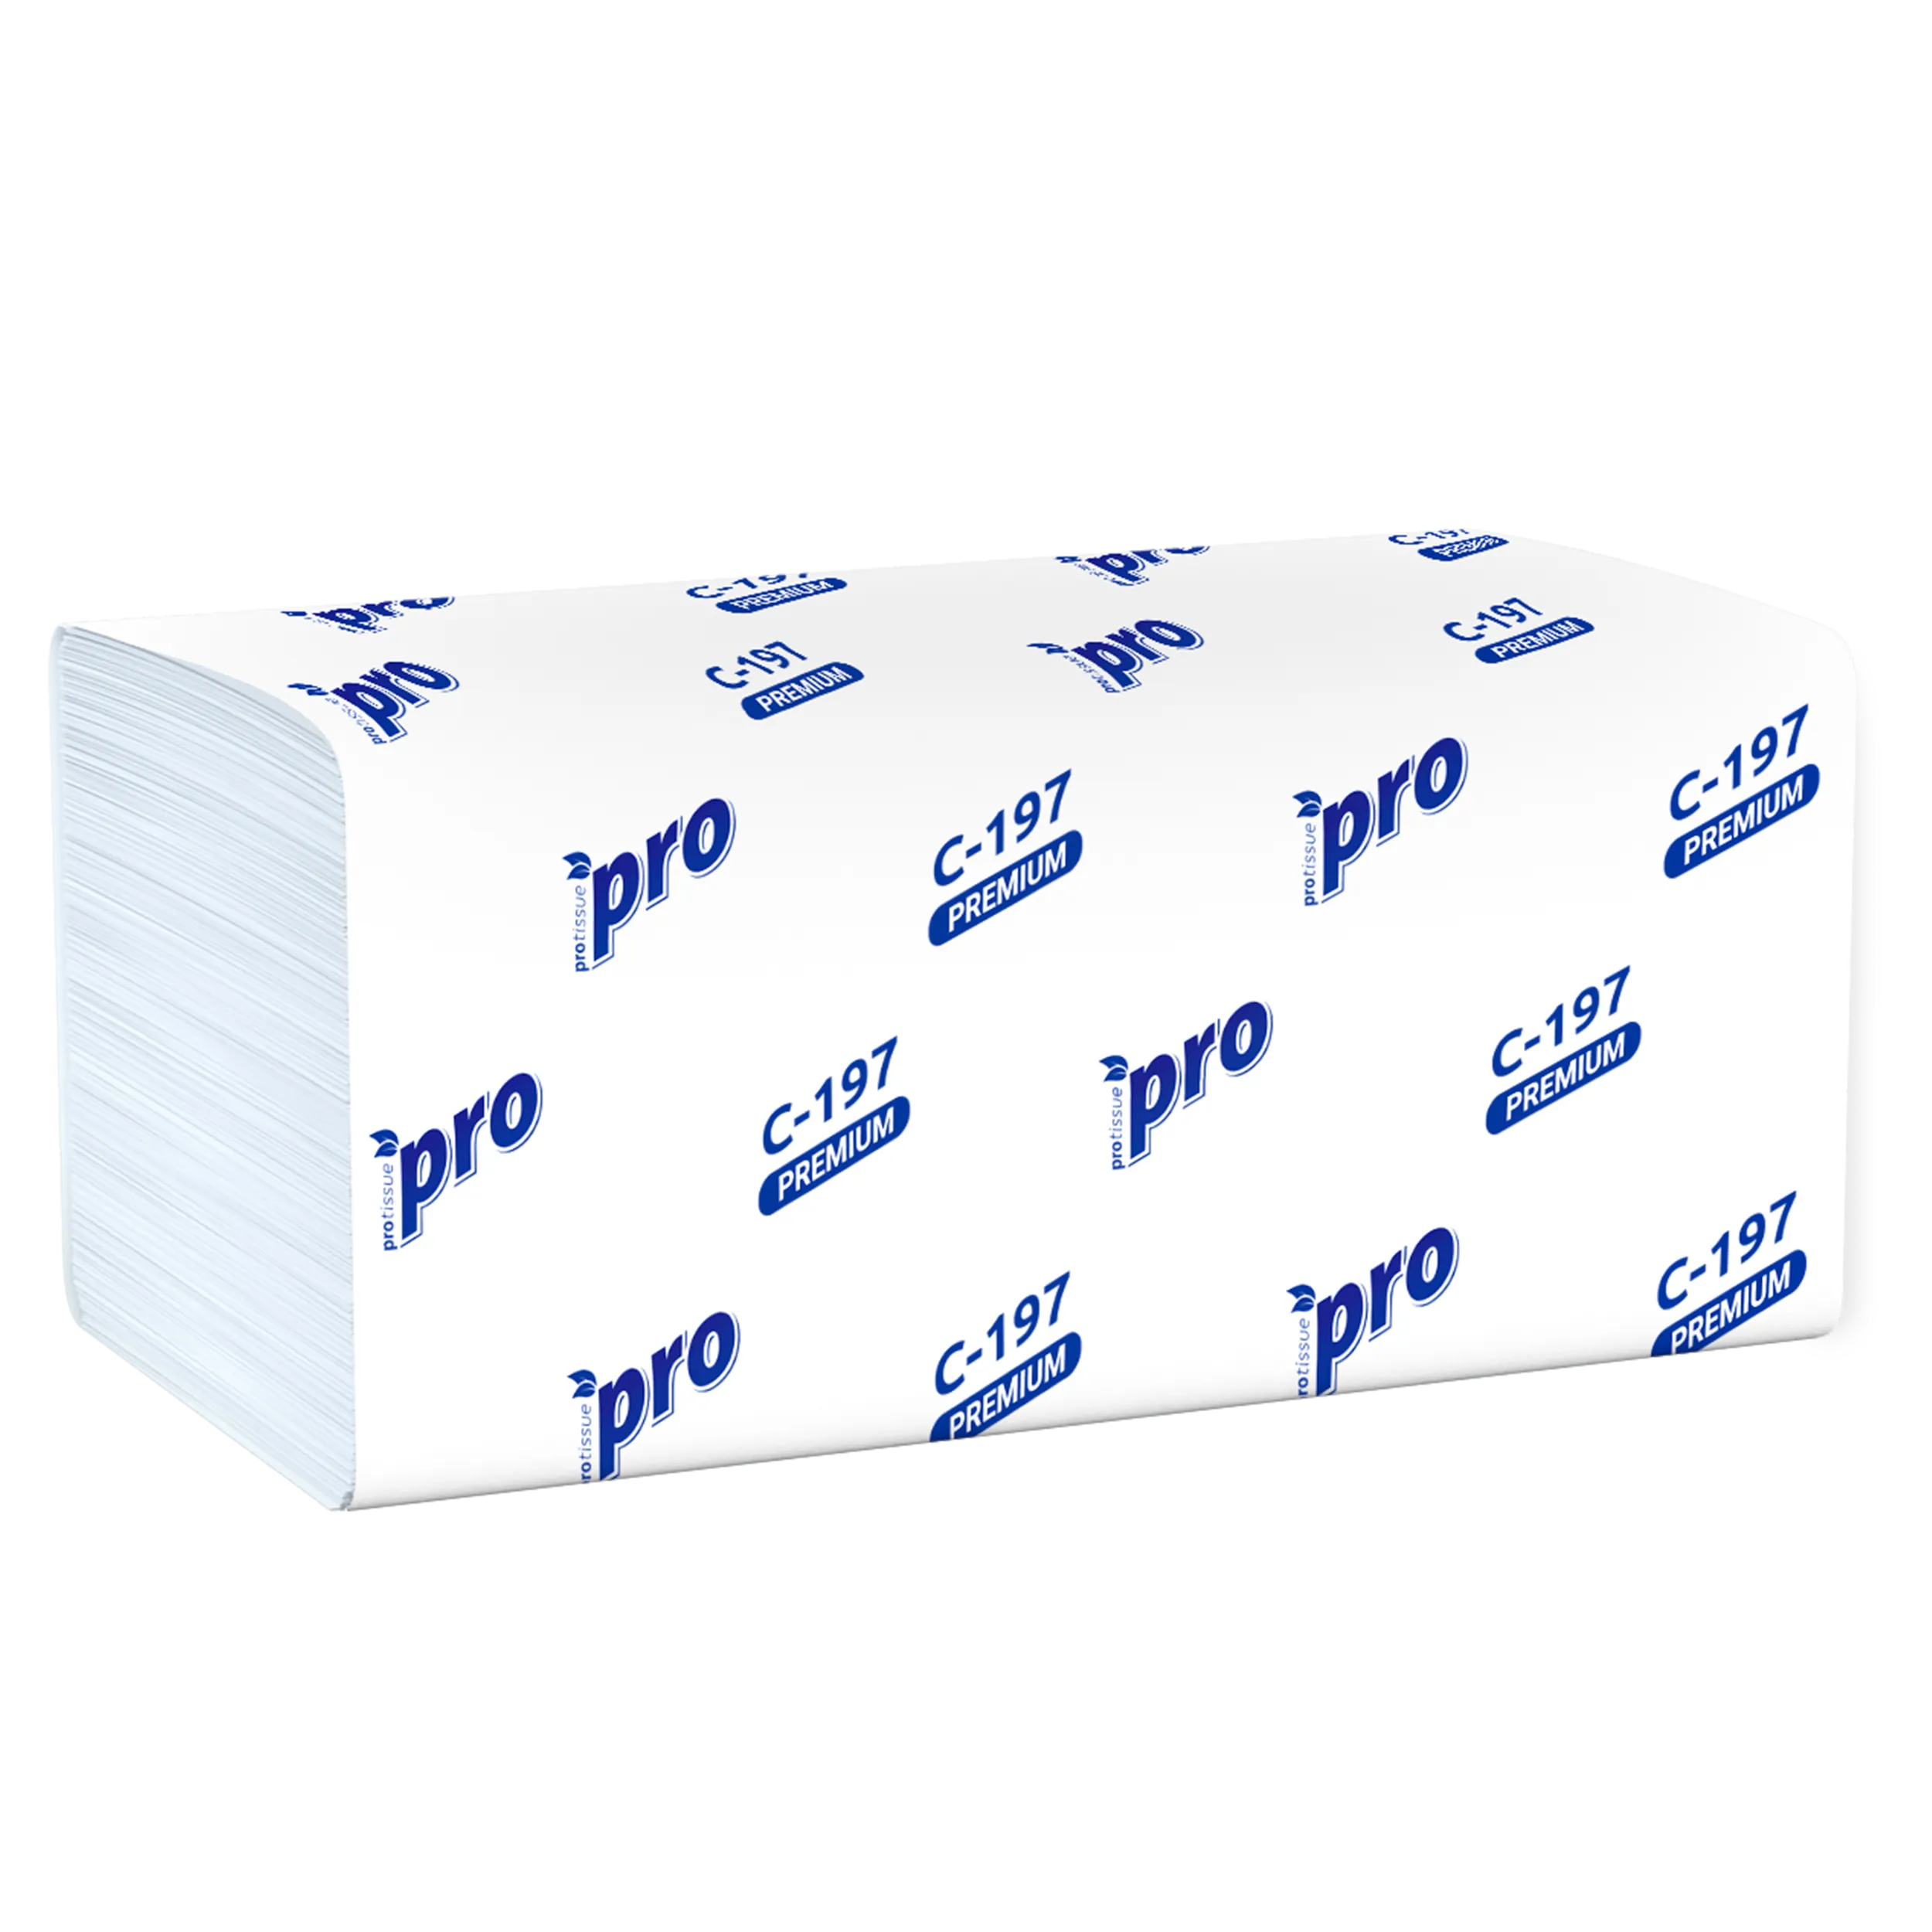 Бумажные полотенца листовые PROtissue V сложения 2 слойные белые 200 листов (артикул производителя C197)